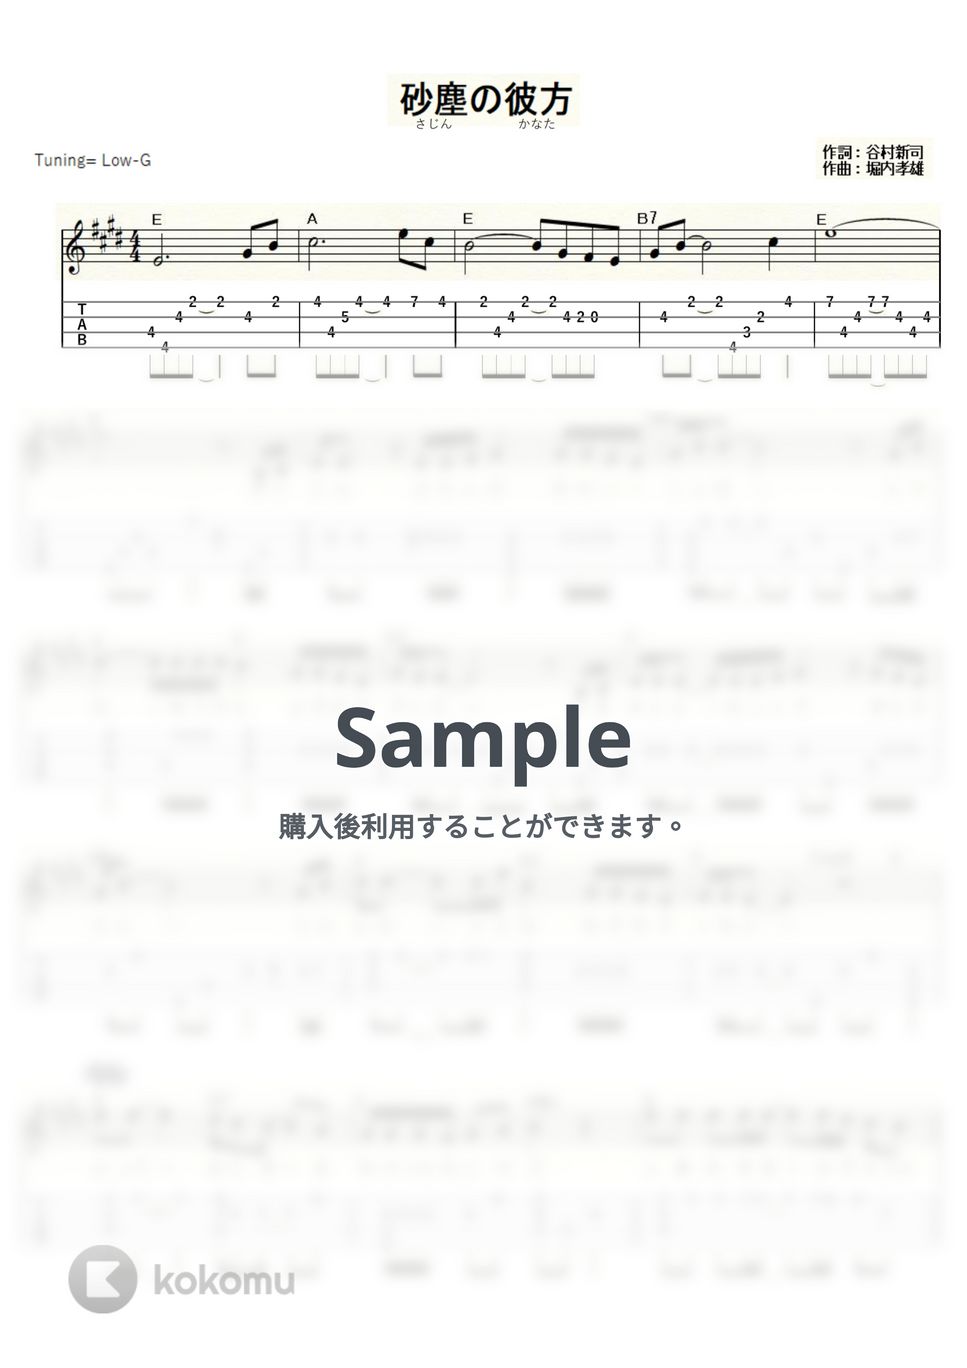 アリス - 砂塵の彼方 (ｳｸﾚﾚｿﾛ/Low-G/中級) by ukulelepapa